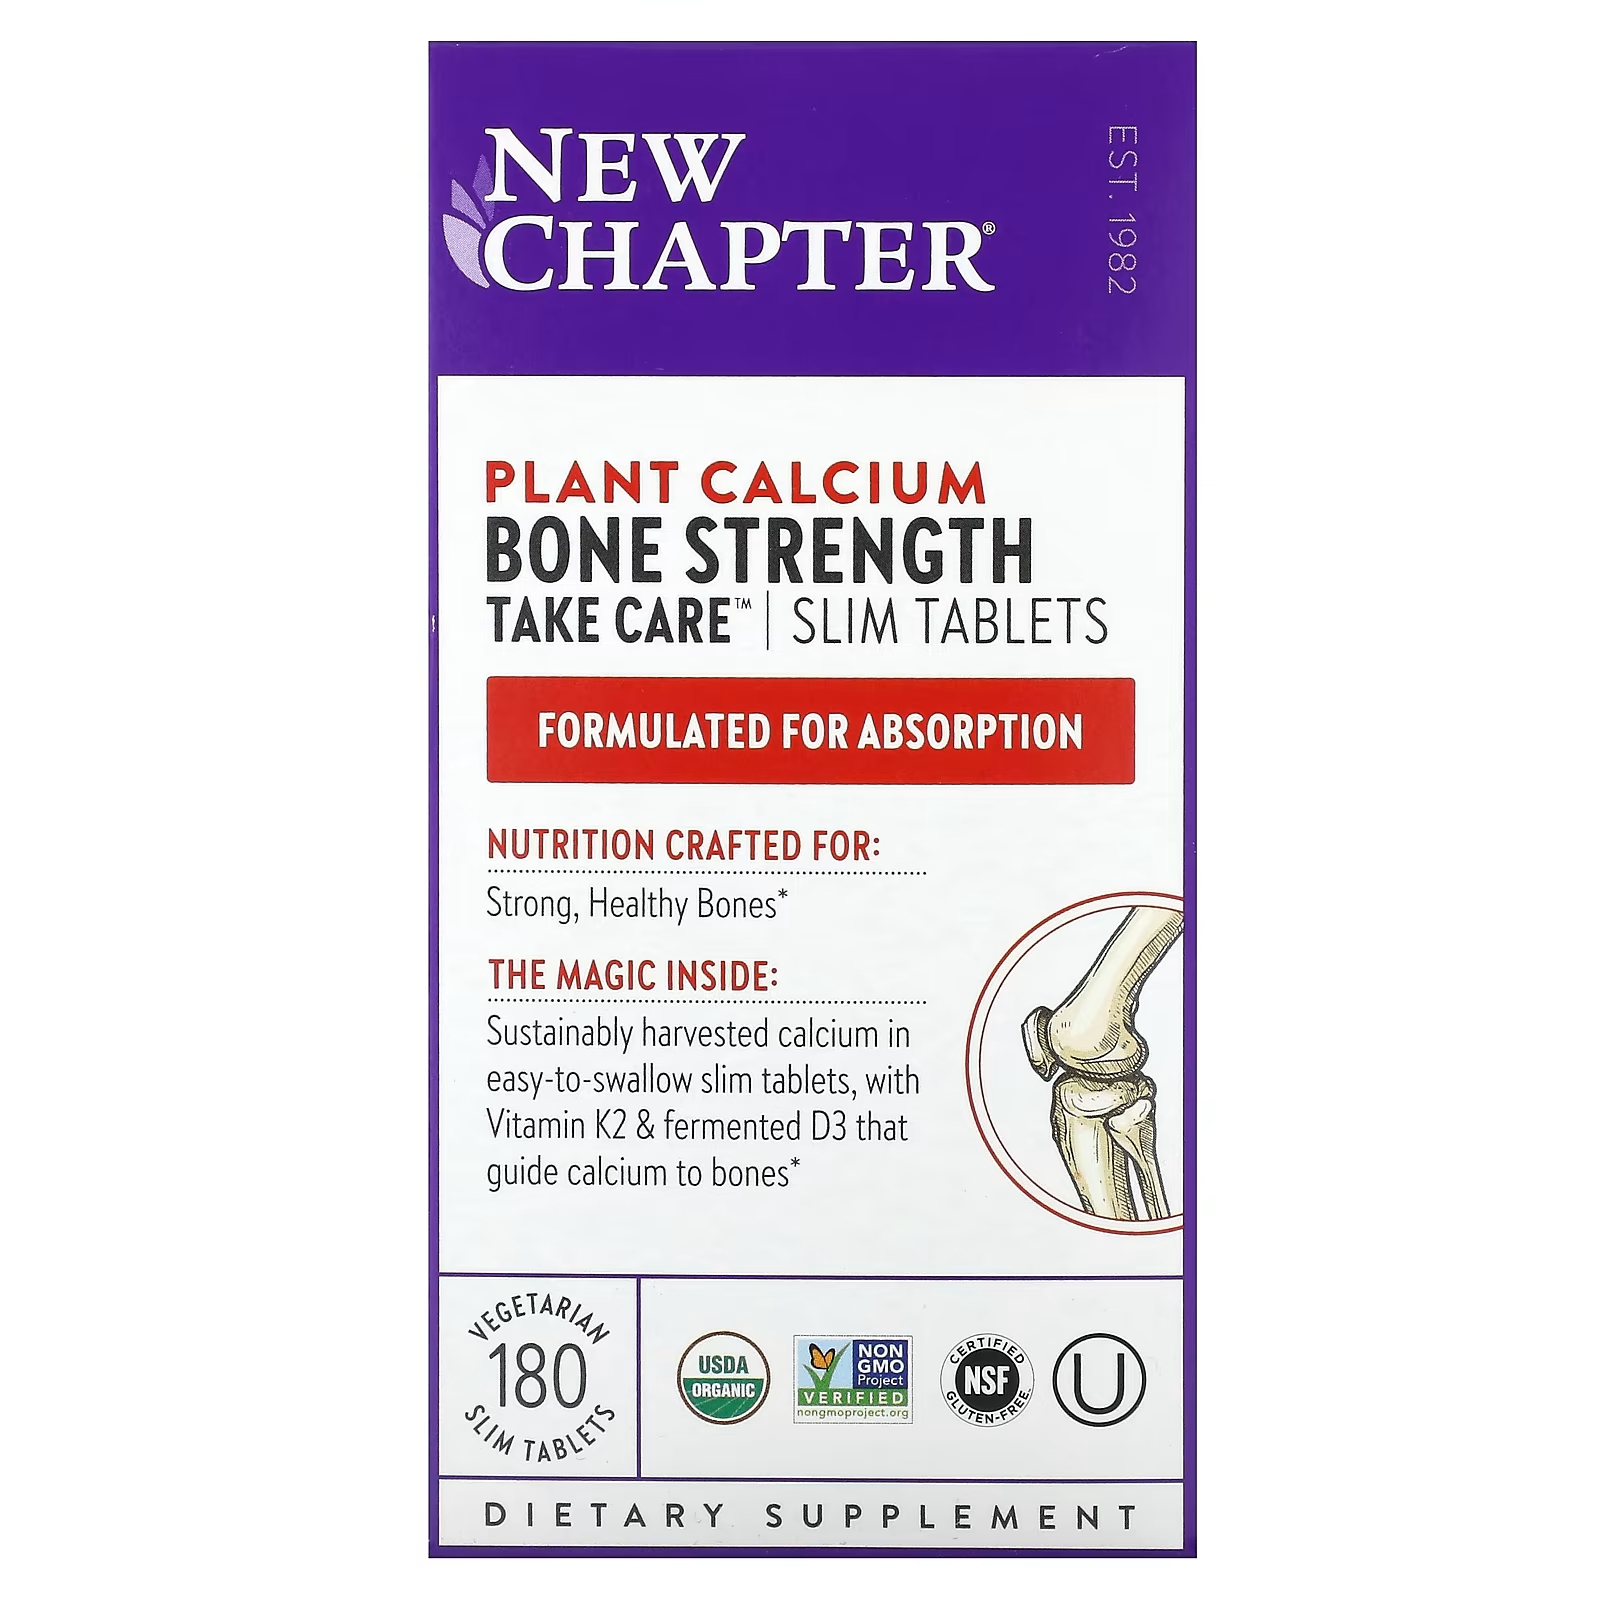 new chapter bone strength take care добавка для укрепления костей 180 маленьких растительных таблеток Растительный кальций New Chapter Take Care для укрепления костей, 180 вегетарианских тонких таблеток